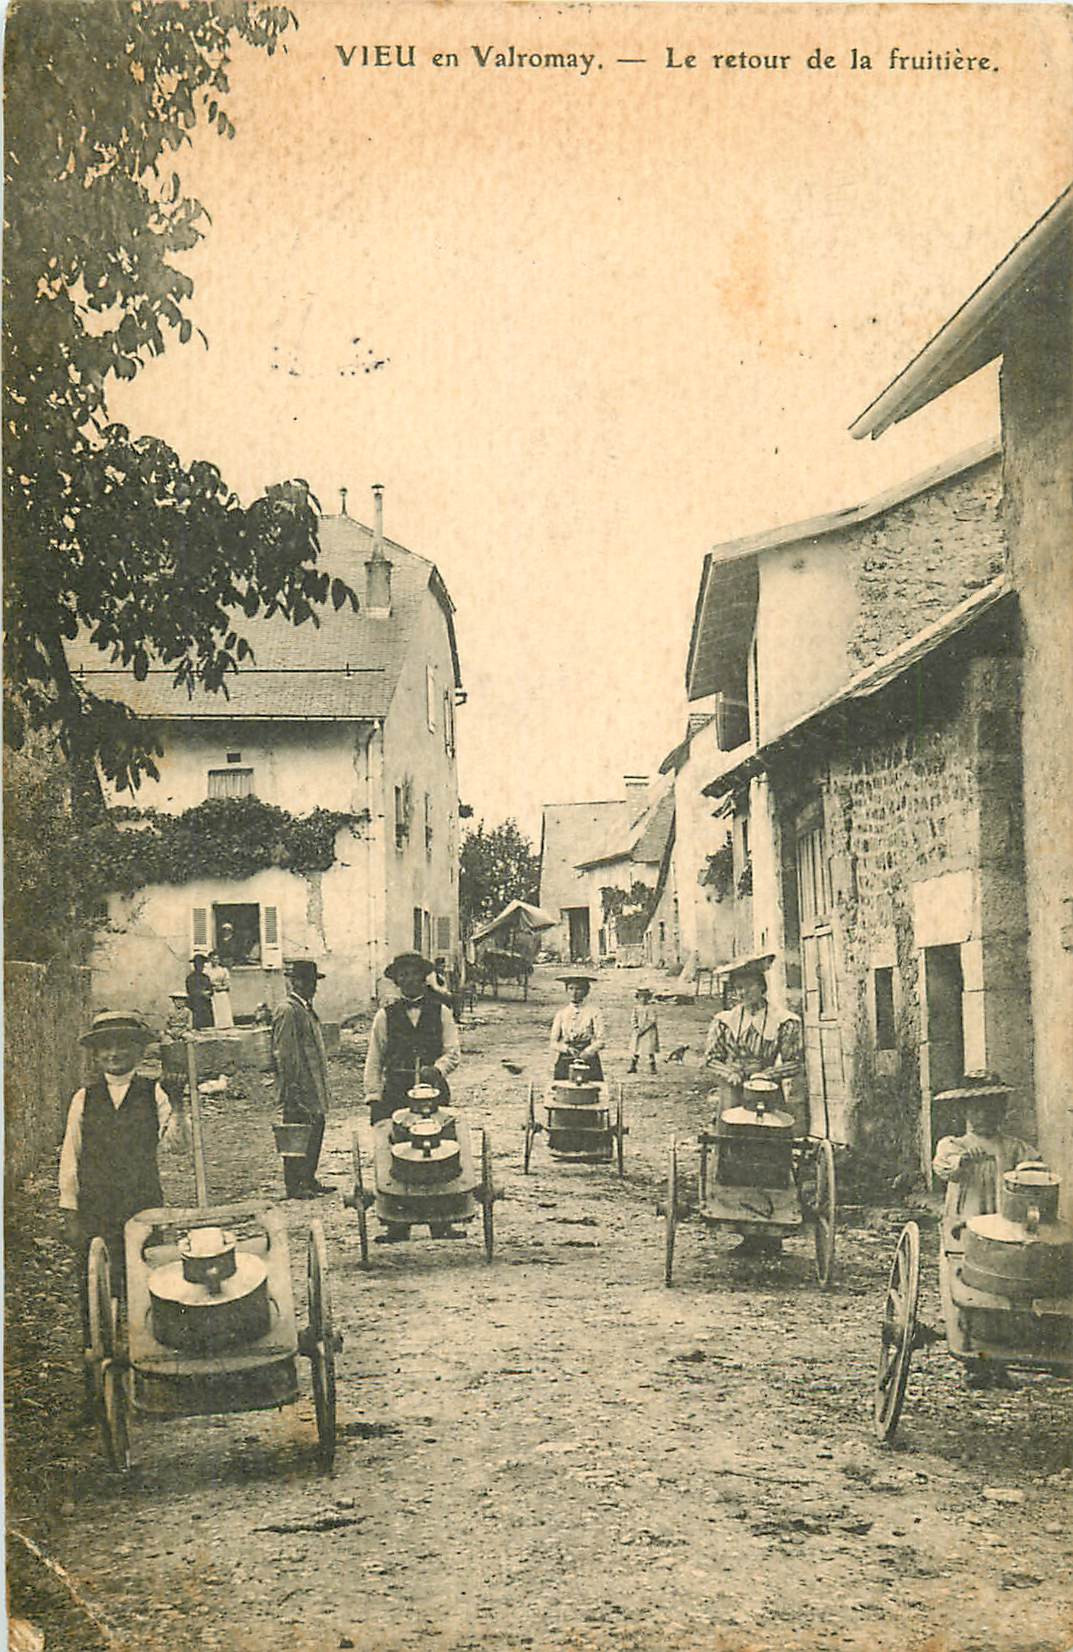 WW 01 VIEU EN VALROMAY. Le retour de la Fruitière 1908